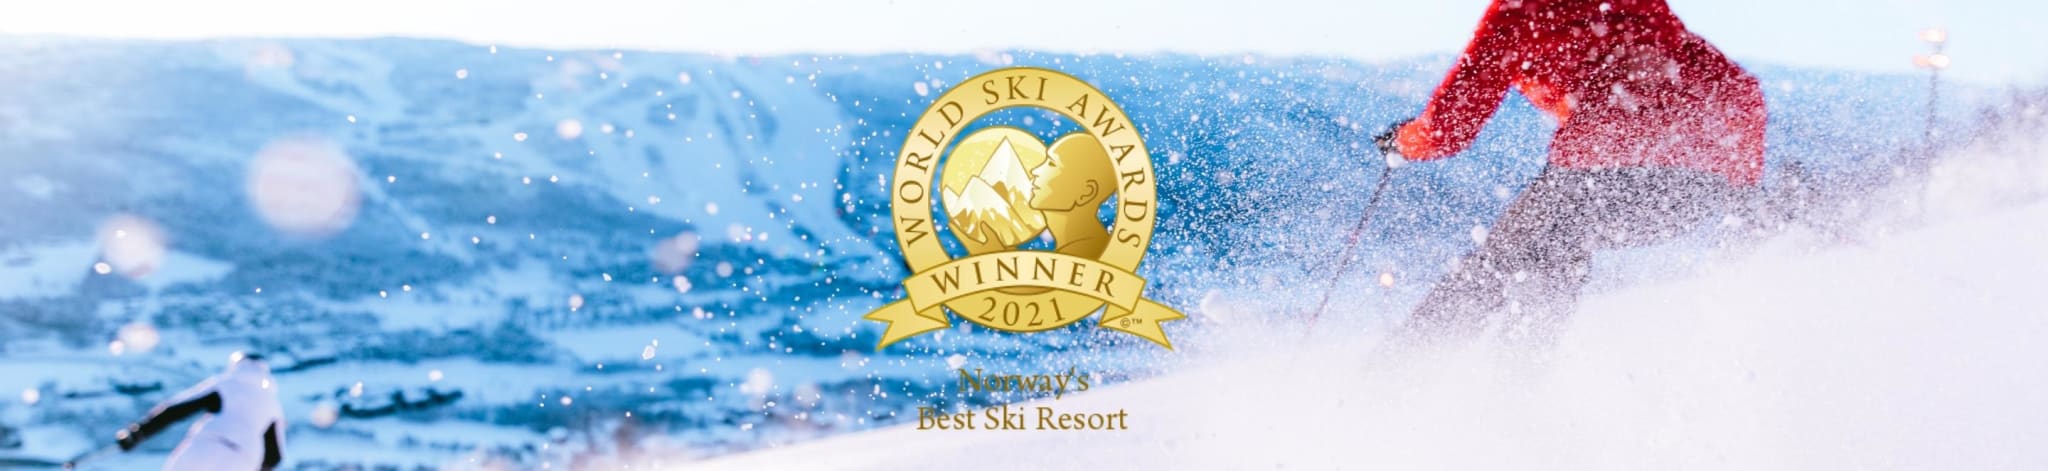 Norway's Best Ski Resort for tredje året på rad!